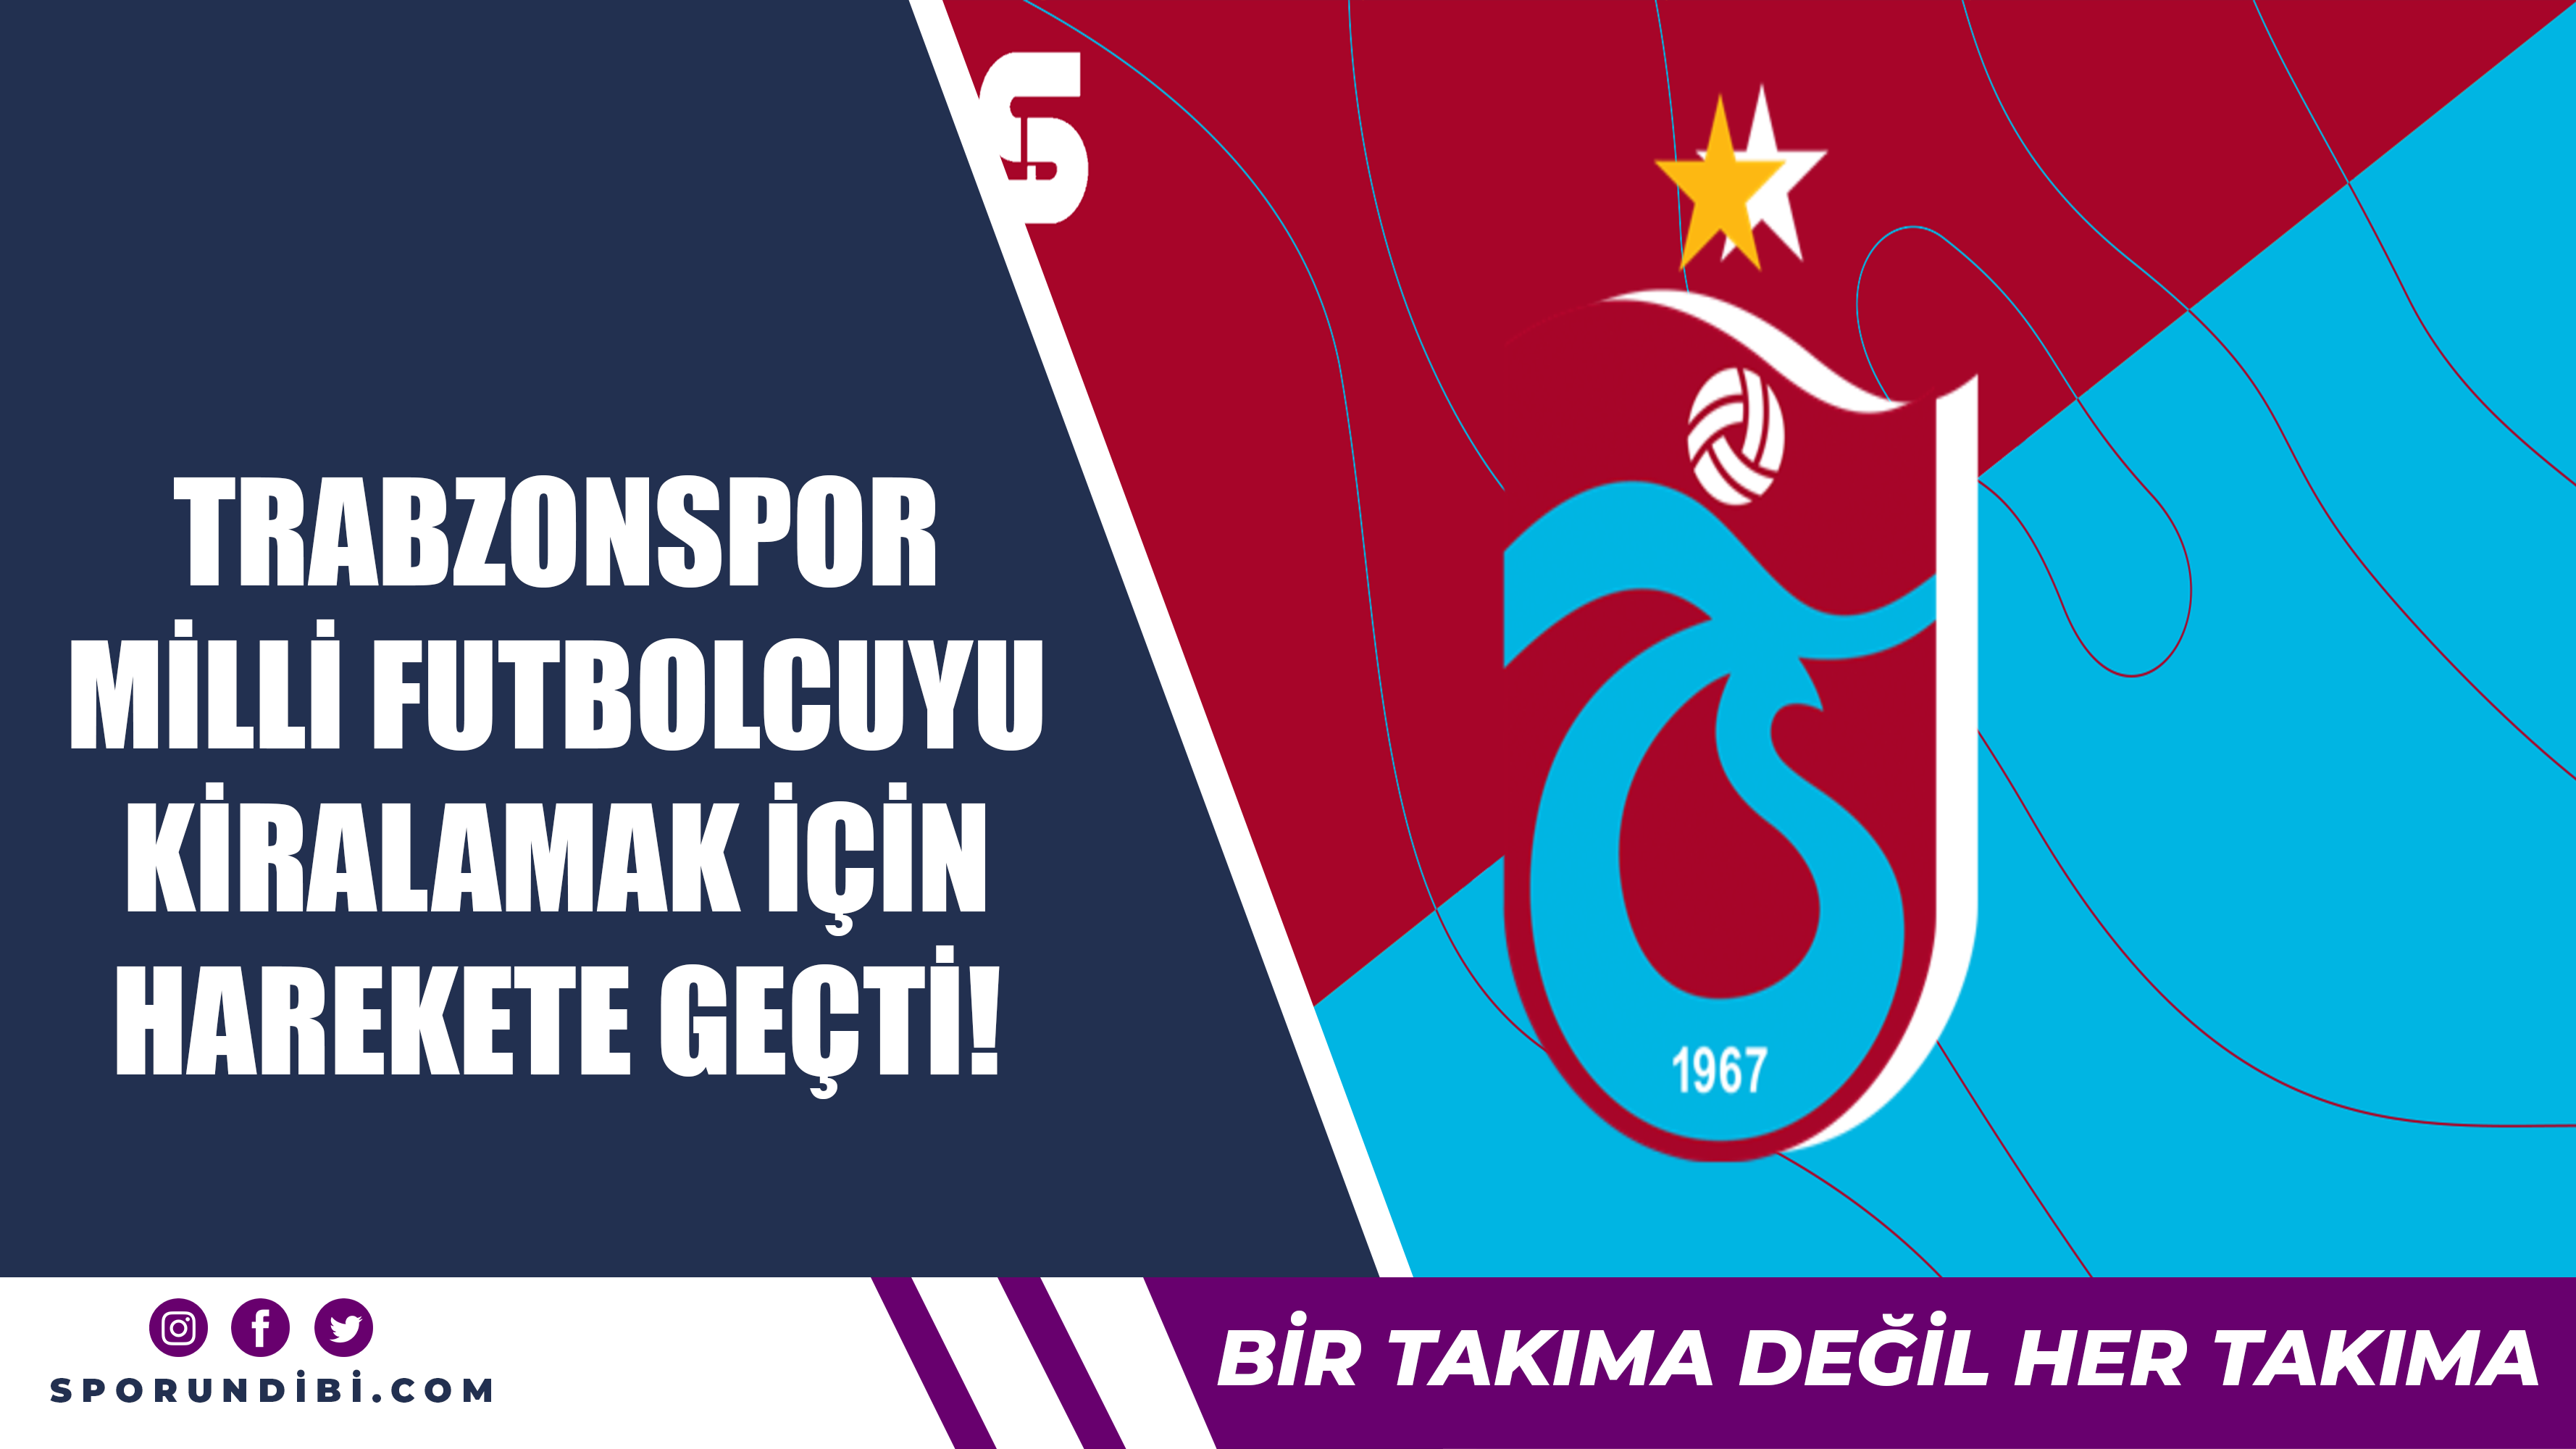 Trabzonspor milli futbolcuyu kiralamak için harekete geçti!